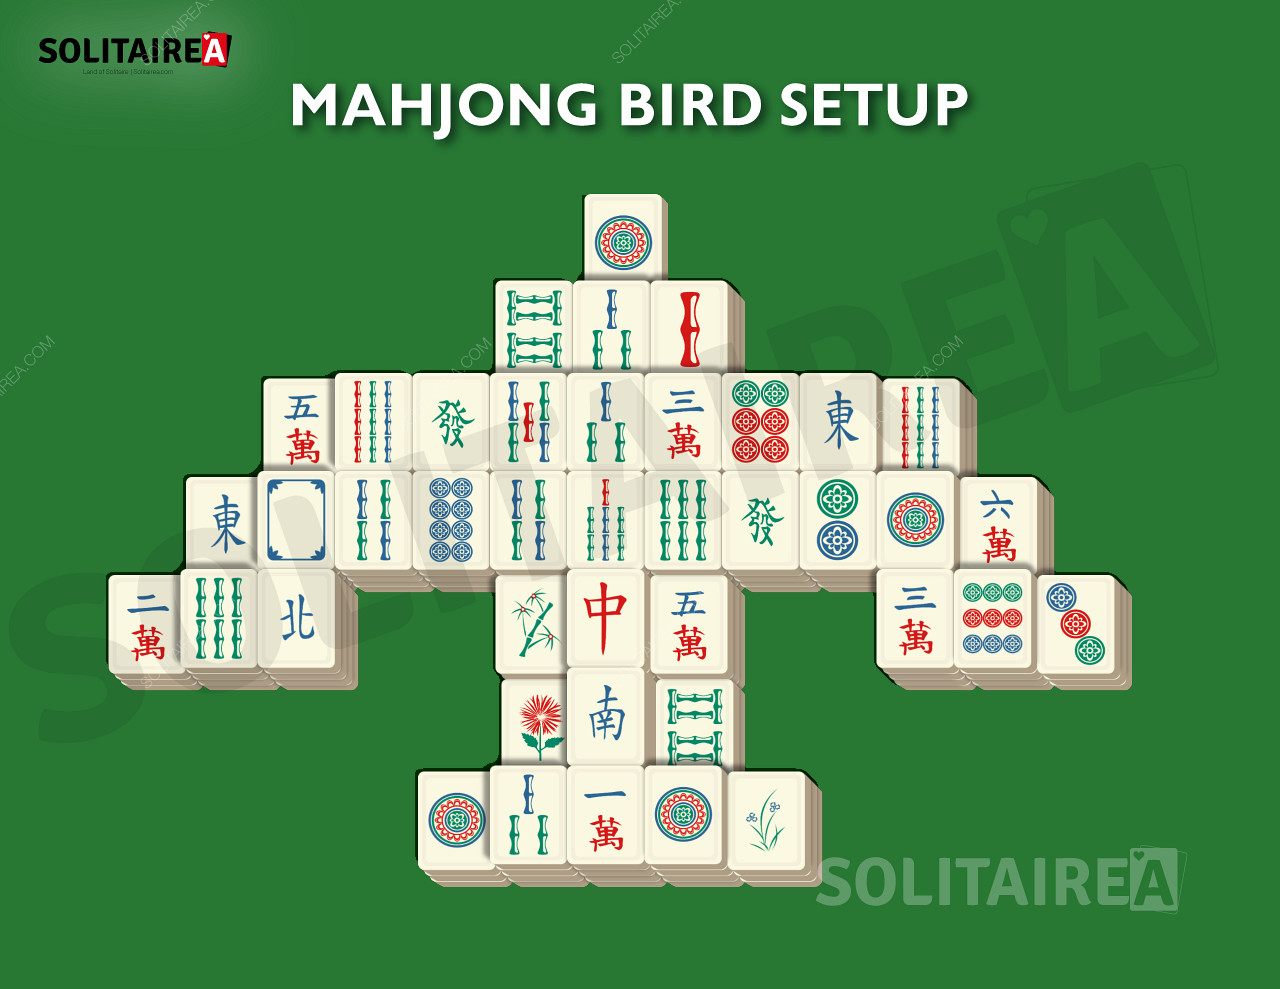 Oppsett og strategi for Mahjong Bird